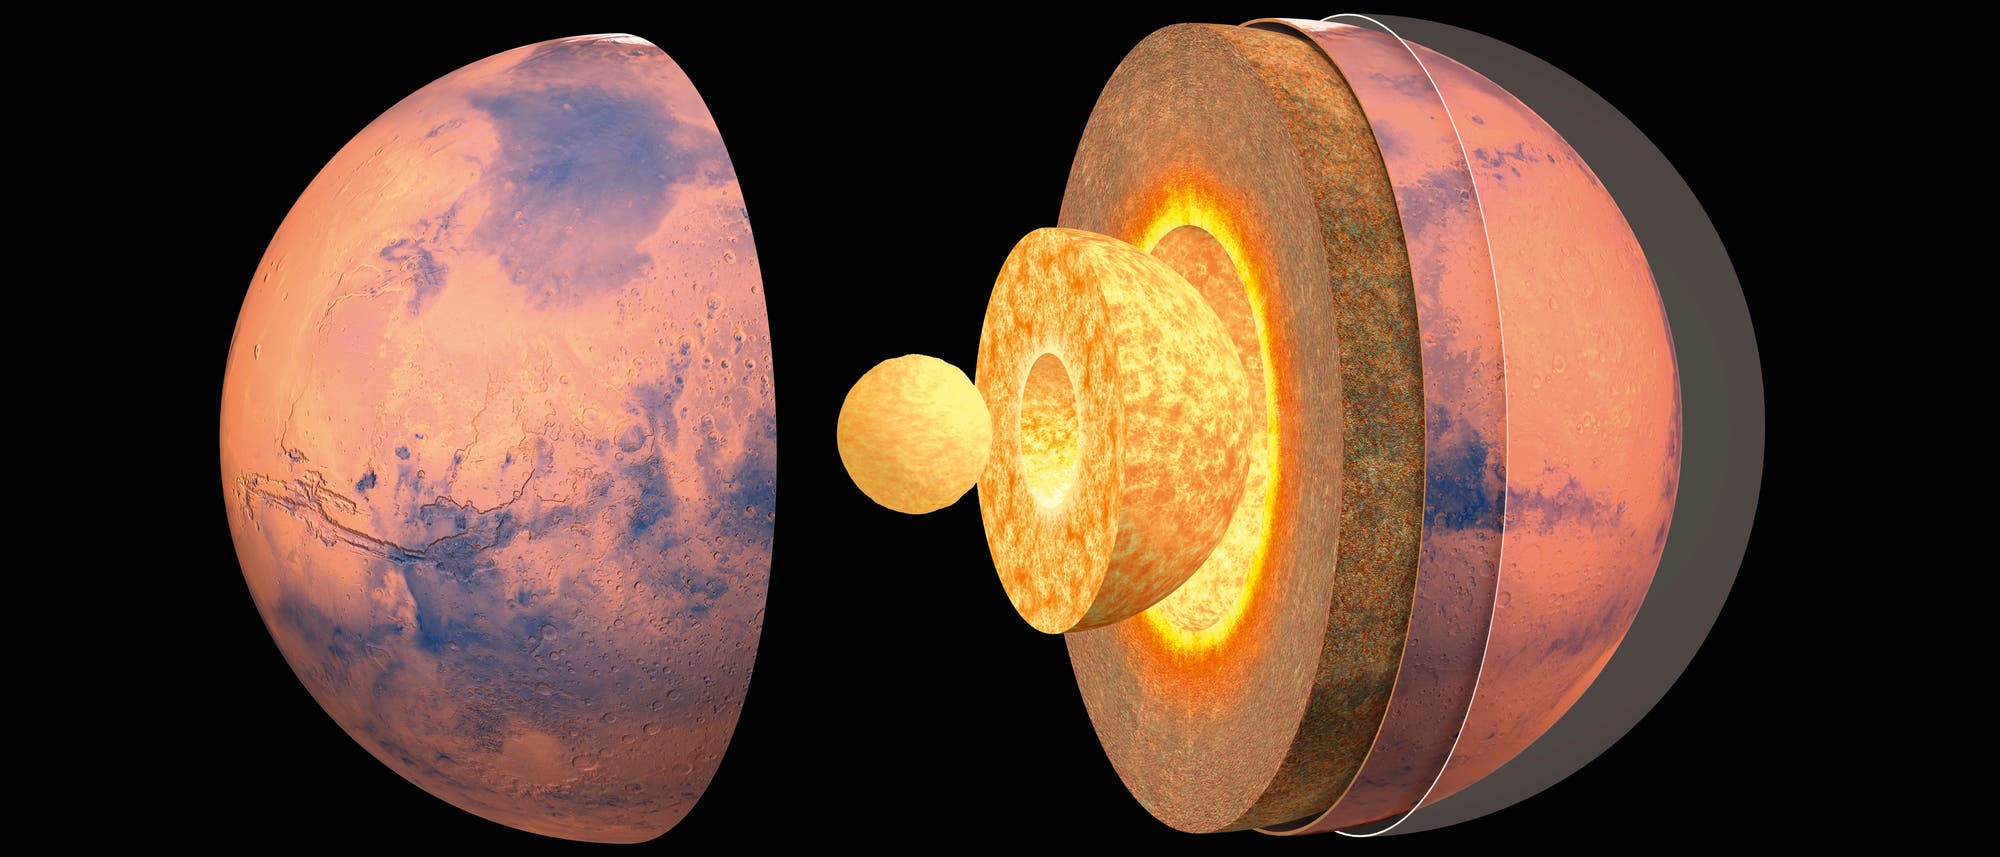 Der Mars gliedert sich wie die Erde in eine Kruste und einen Mantel aus Silikatmineralen sowie einen Kern aus metallischem Eisen. Ob sich jener, wie hier dargestellt, noch weiter in einen flüssigen äußeren und einen festen inneren Kern aufteilt, ist nur eine der vielen Fragen, welche die Raumsonde InSight klären soll. Auch die Mächtigkeiten von Kruste und Mantel sind bislang nur sehr ungenau bekannt.